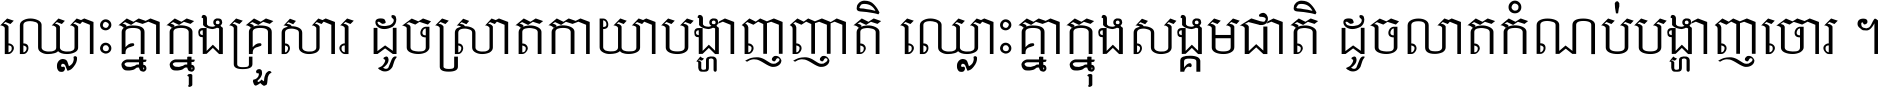 Khmer Chhay Text 3